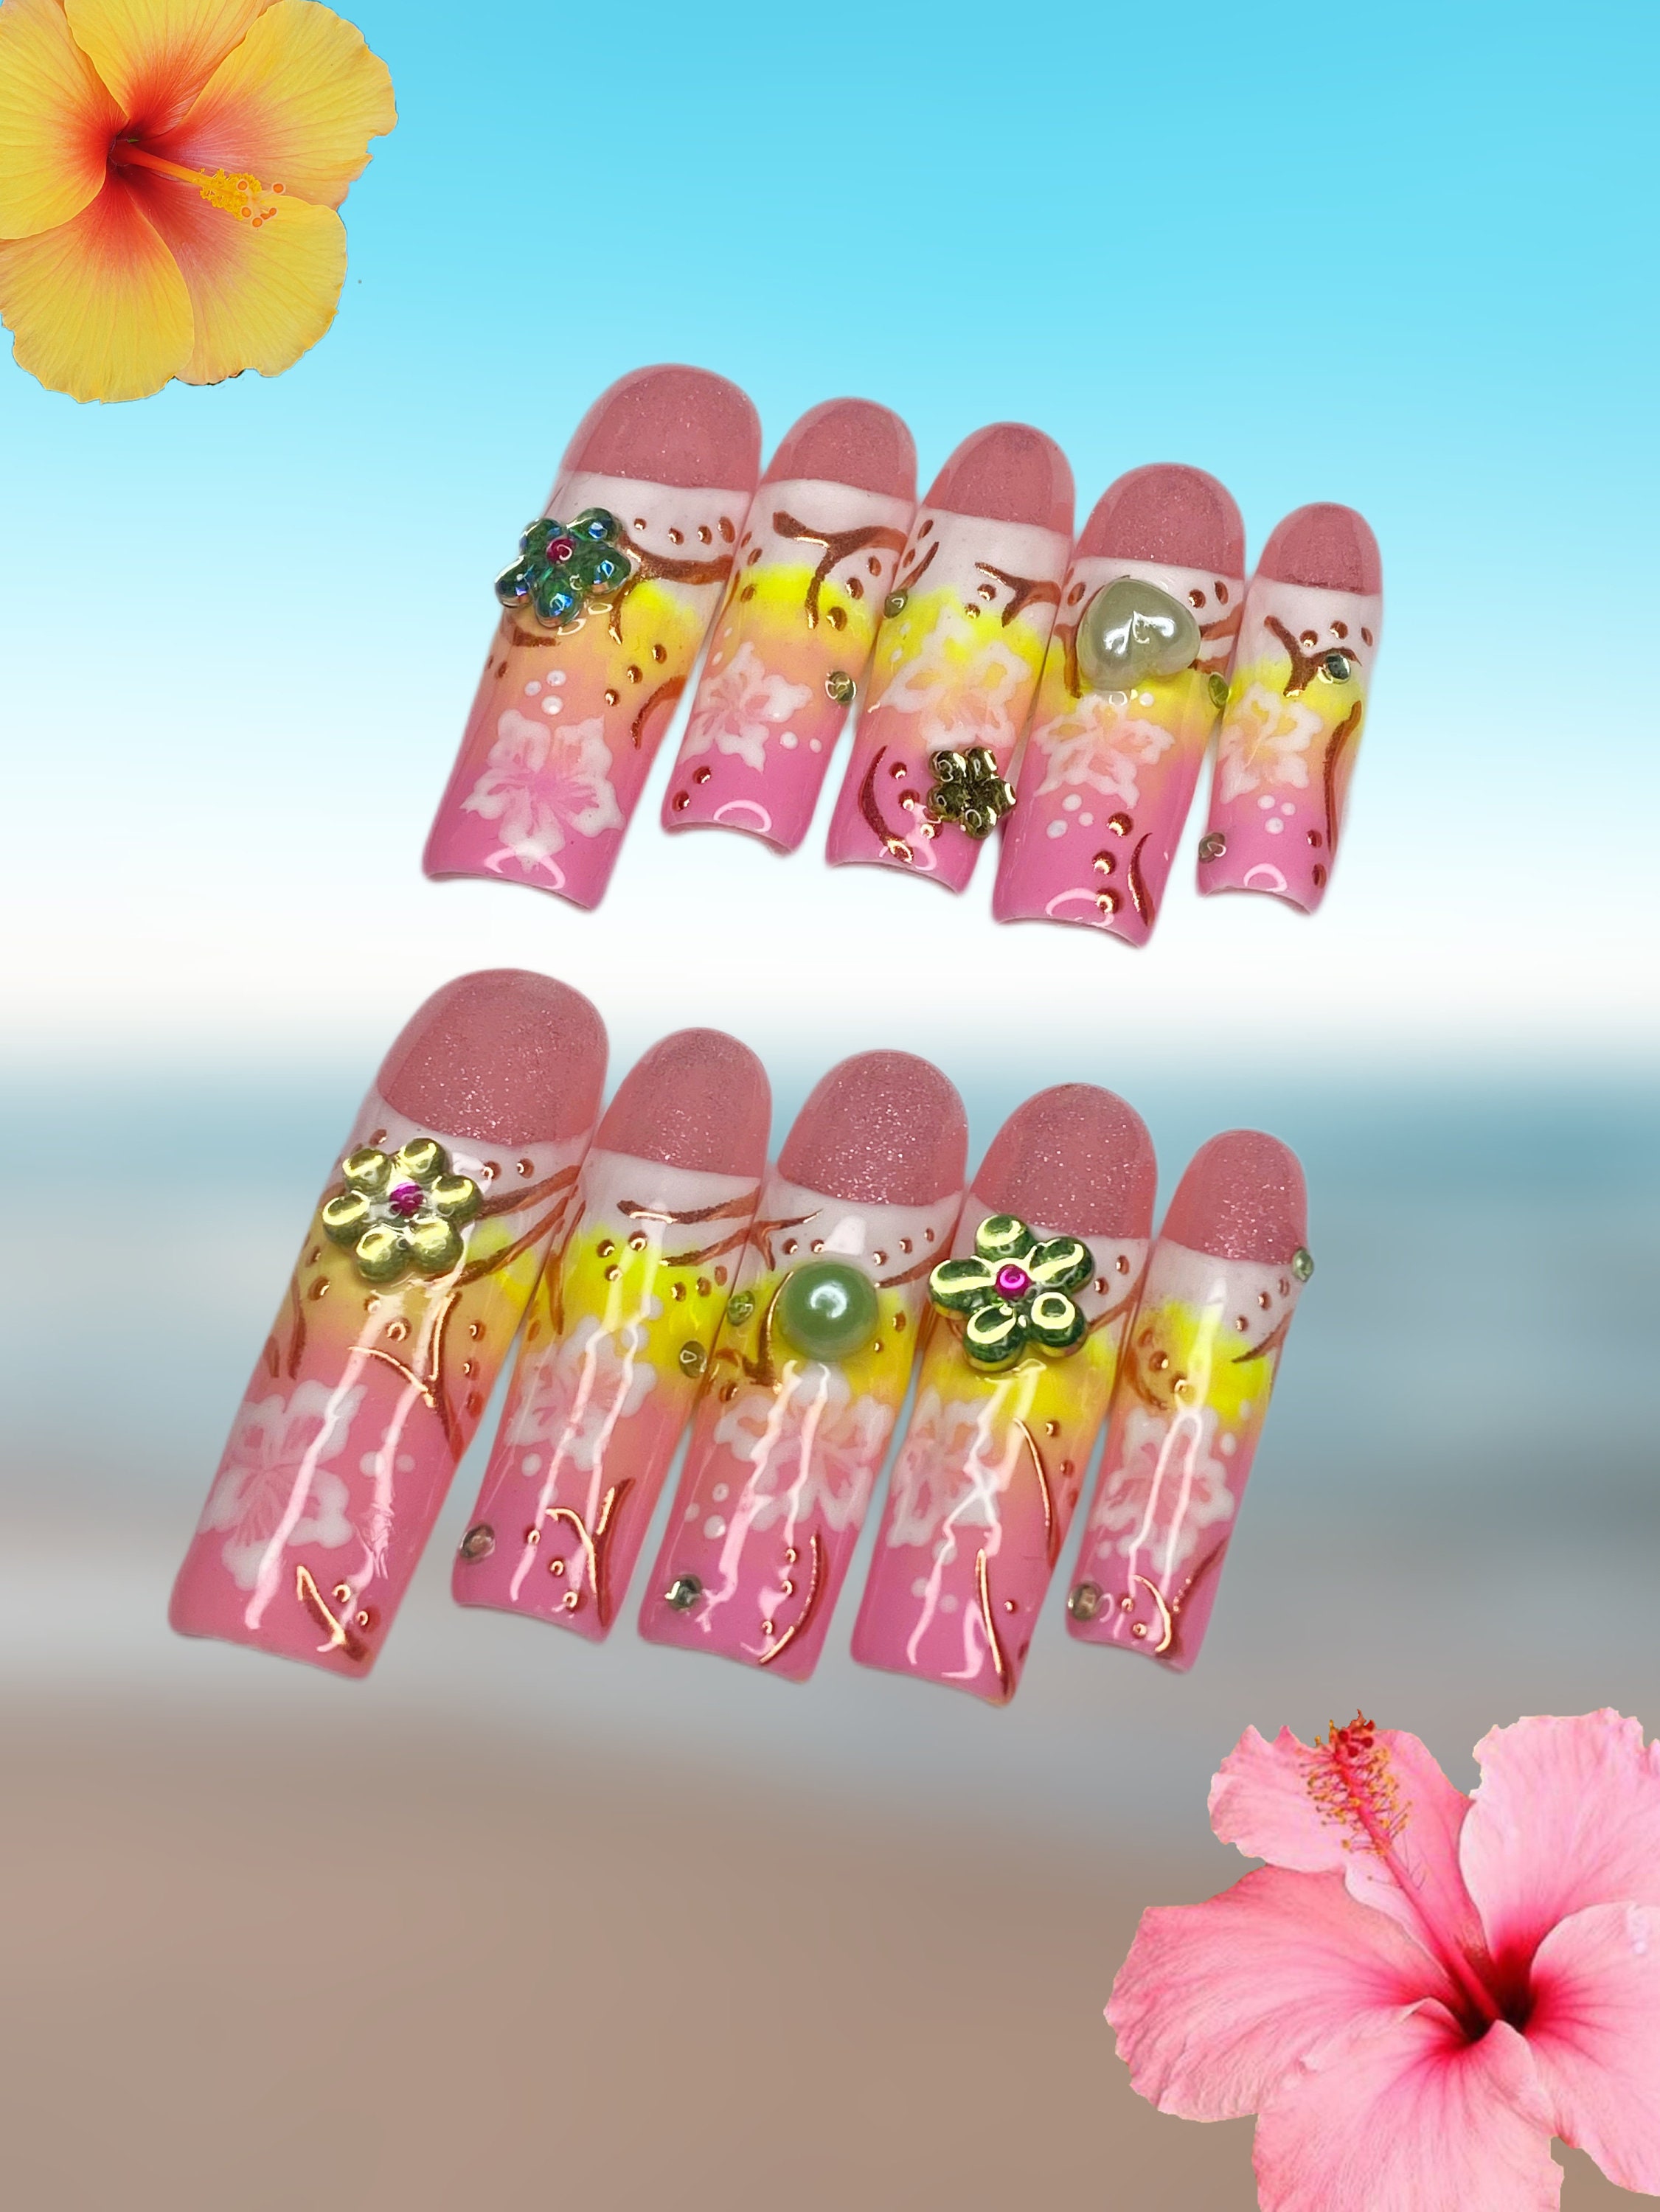 xbebebarbiiix — 💗 pink airbrush nails 💗